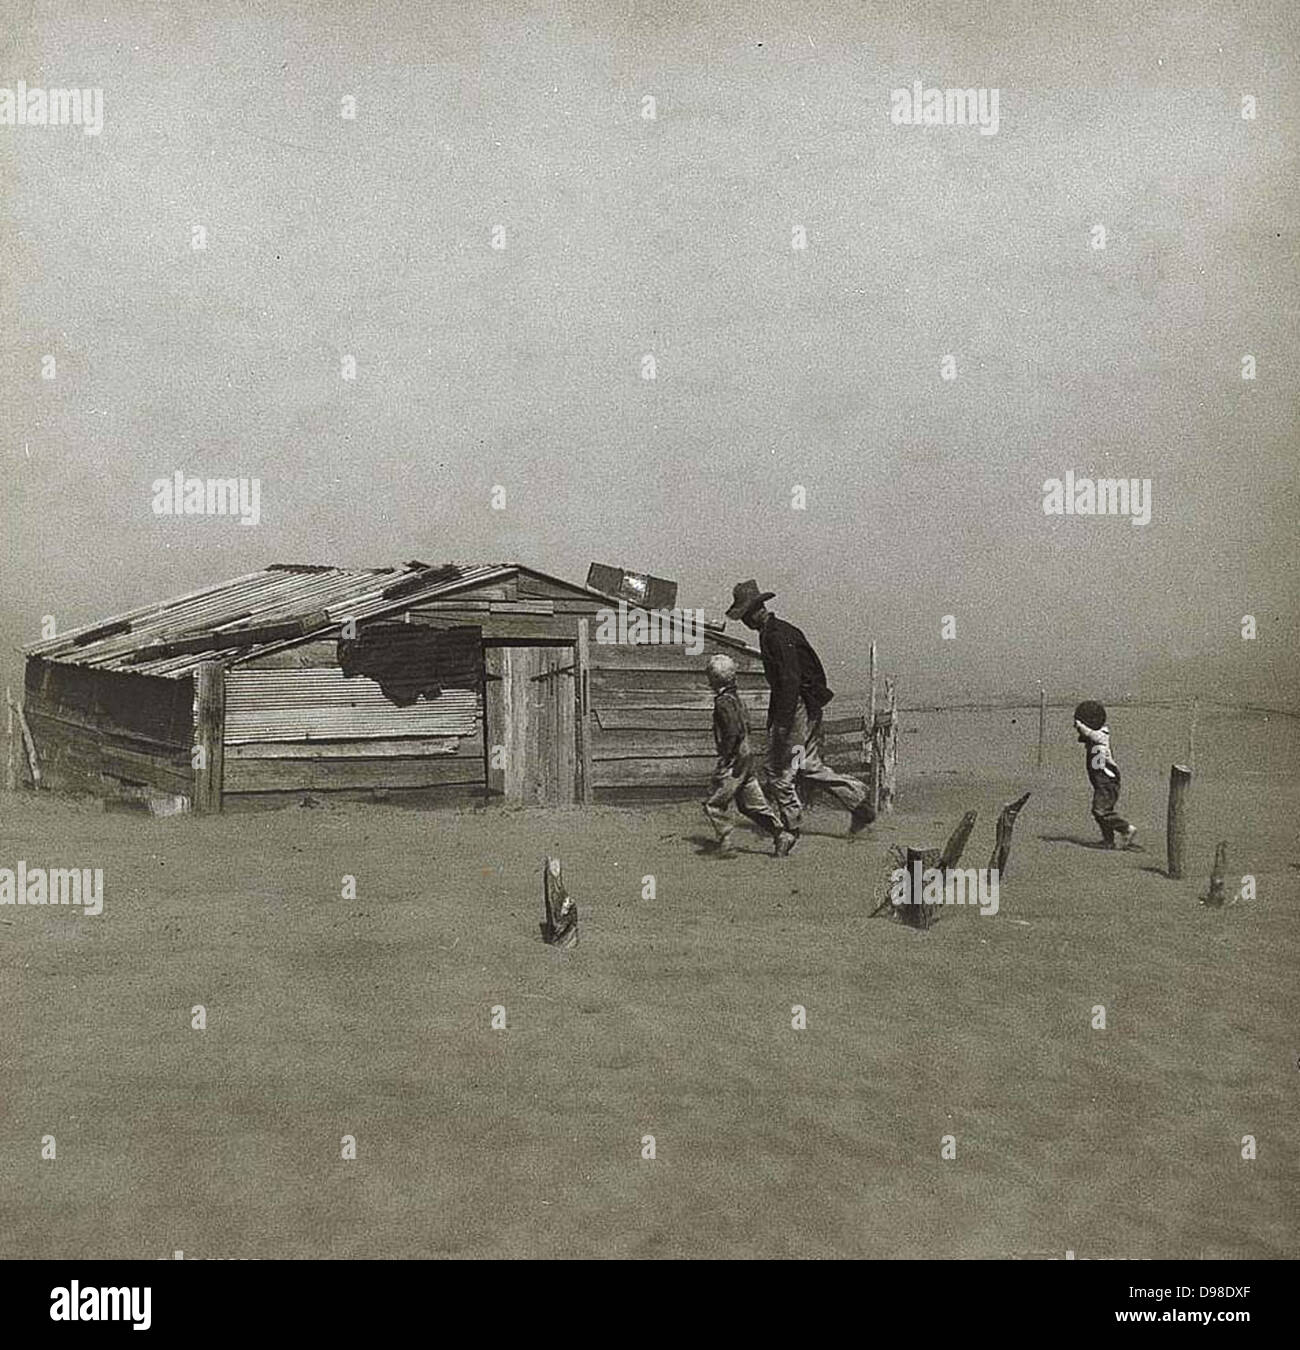 Tempête dans la poussière, à l'Amérique, 1930. Les hommes et les garçons à marcher en direction de cabane en bois peu à peu couvertes par la poussière emportée par le vent. Petit garçon est levant la main pour protéger son visage. Banque D'Images